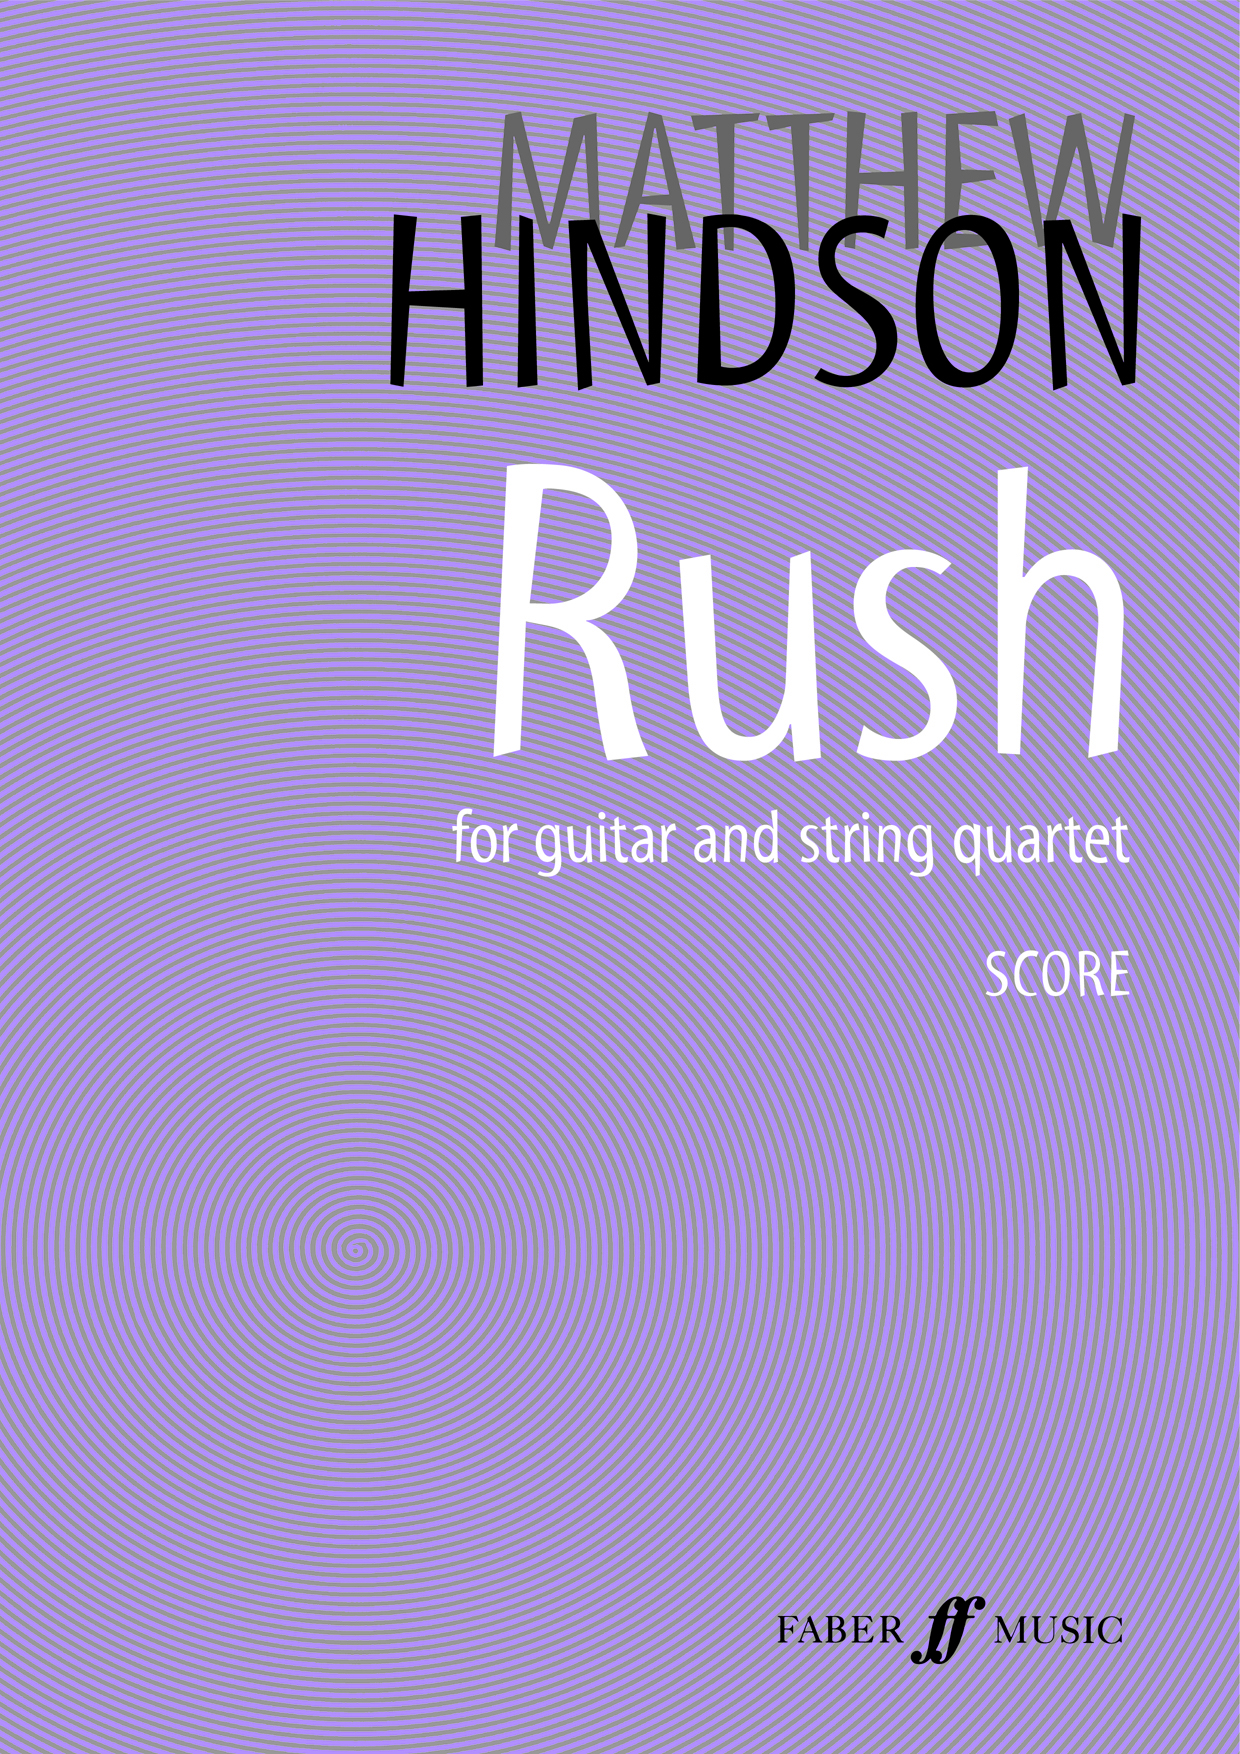 Rush (HINDSON MATTHEW)